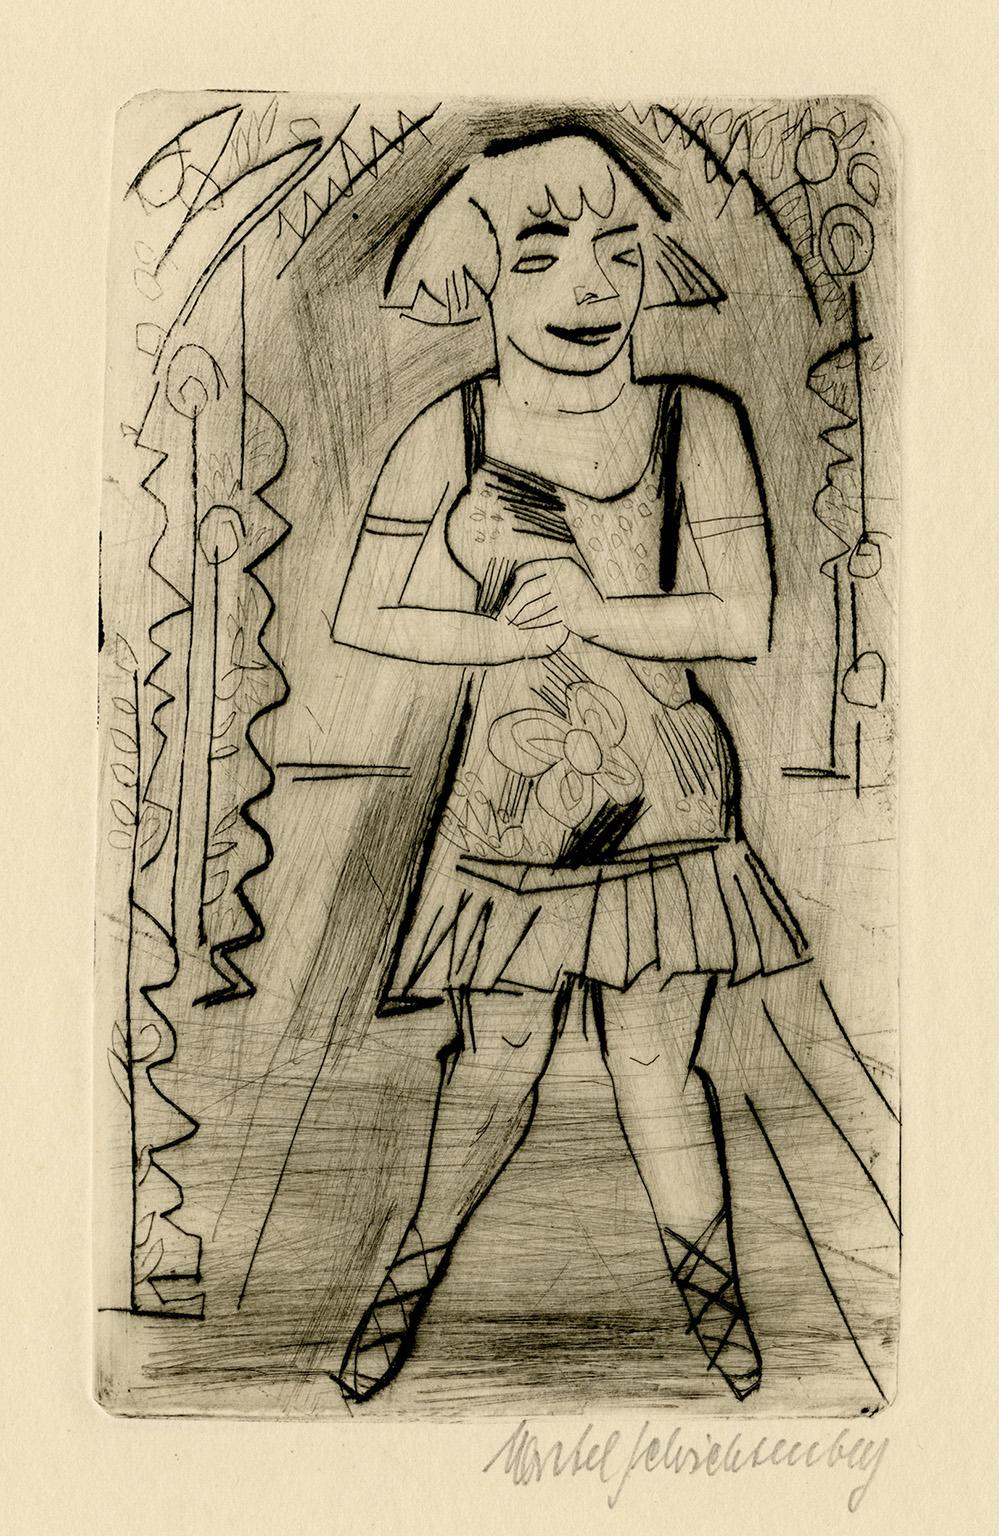 Varietesoubrette, Schwalbennest' aussi danseur - Expressionnisme allemand des années 1920